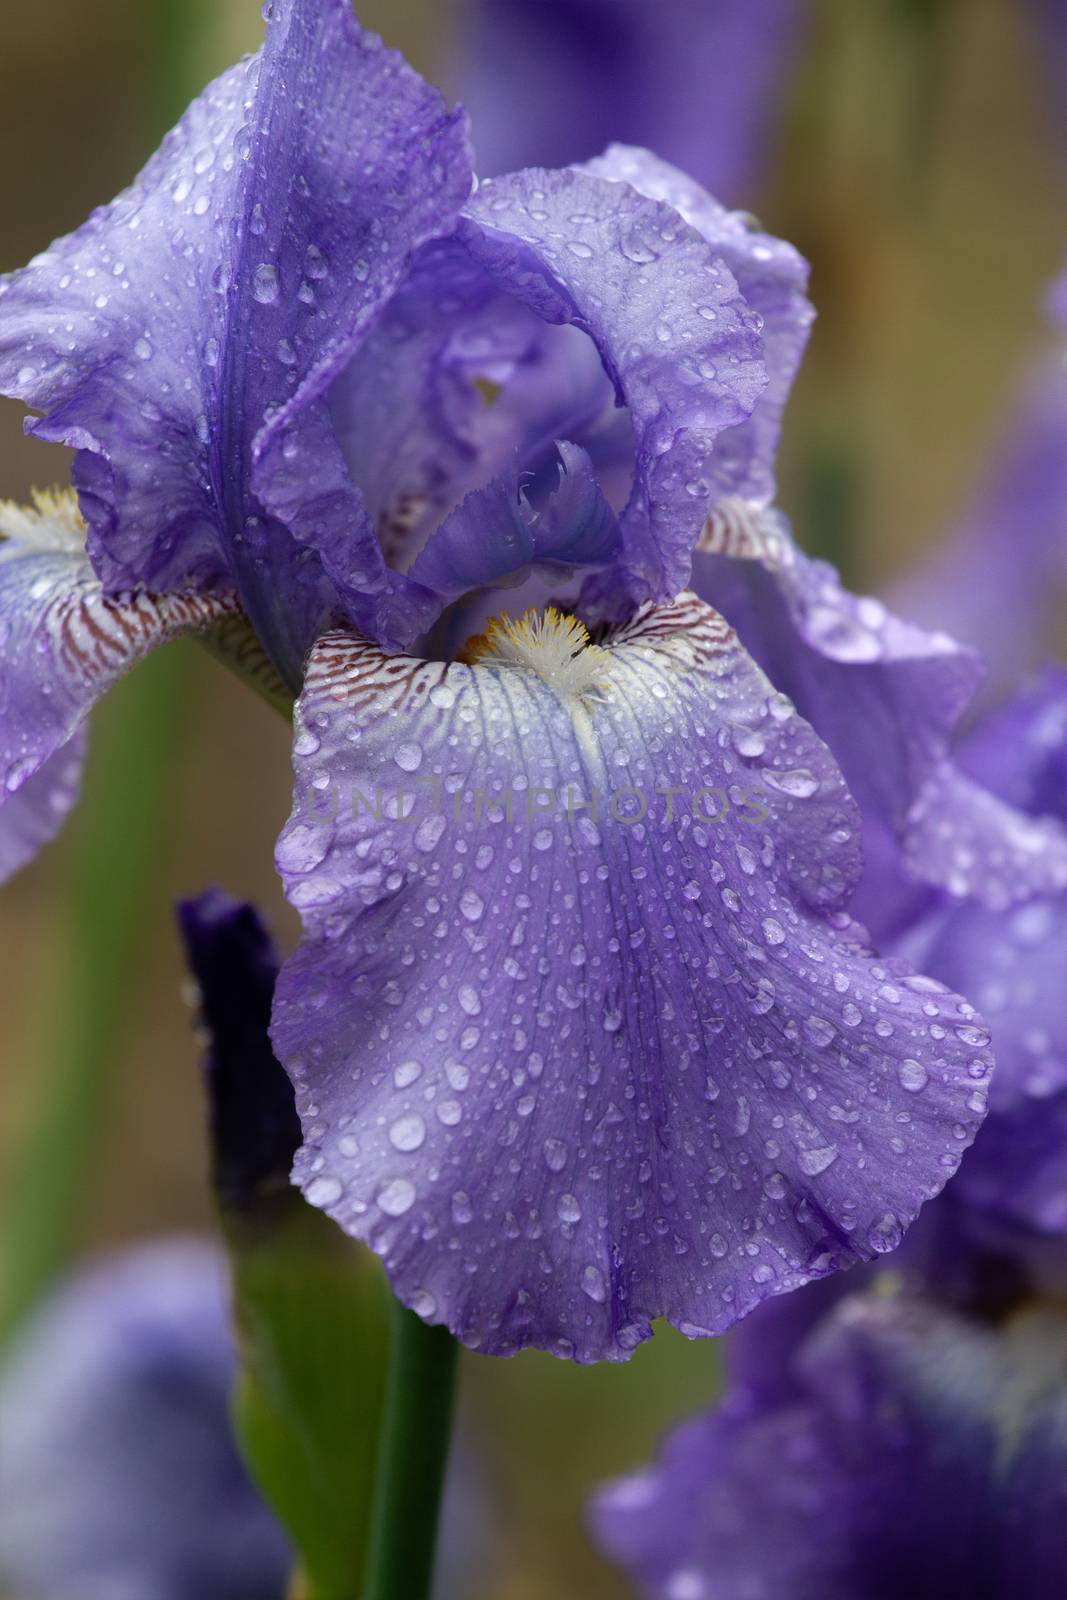 Iris flower bloom after rain close up by fogen